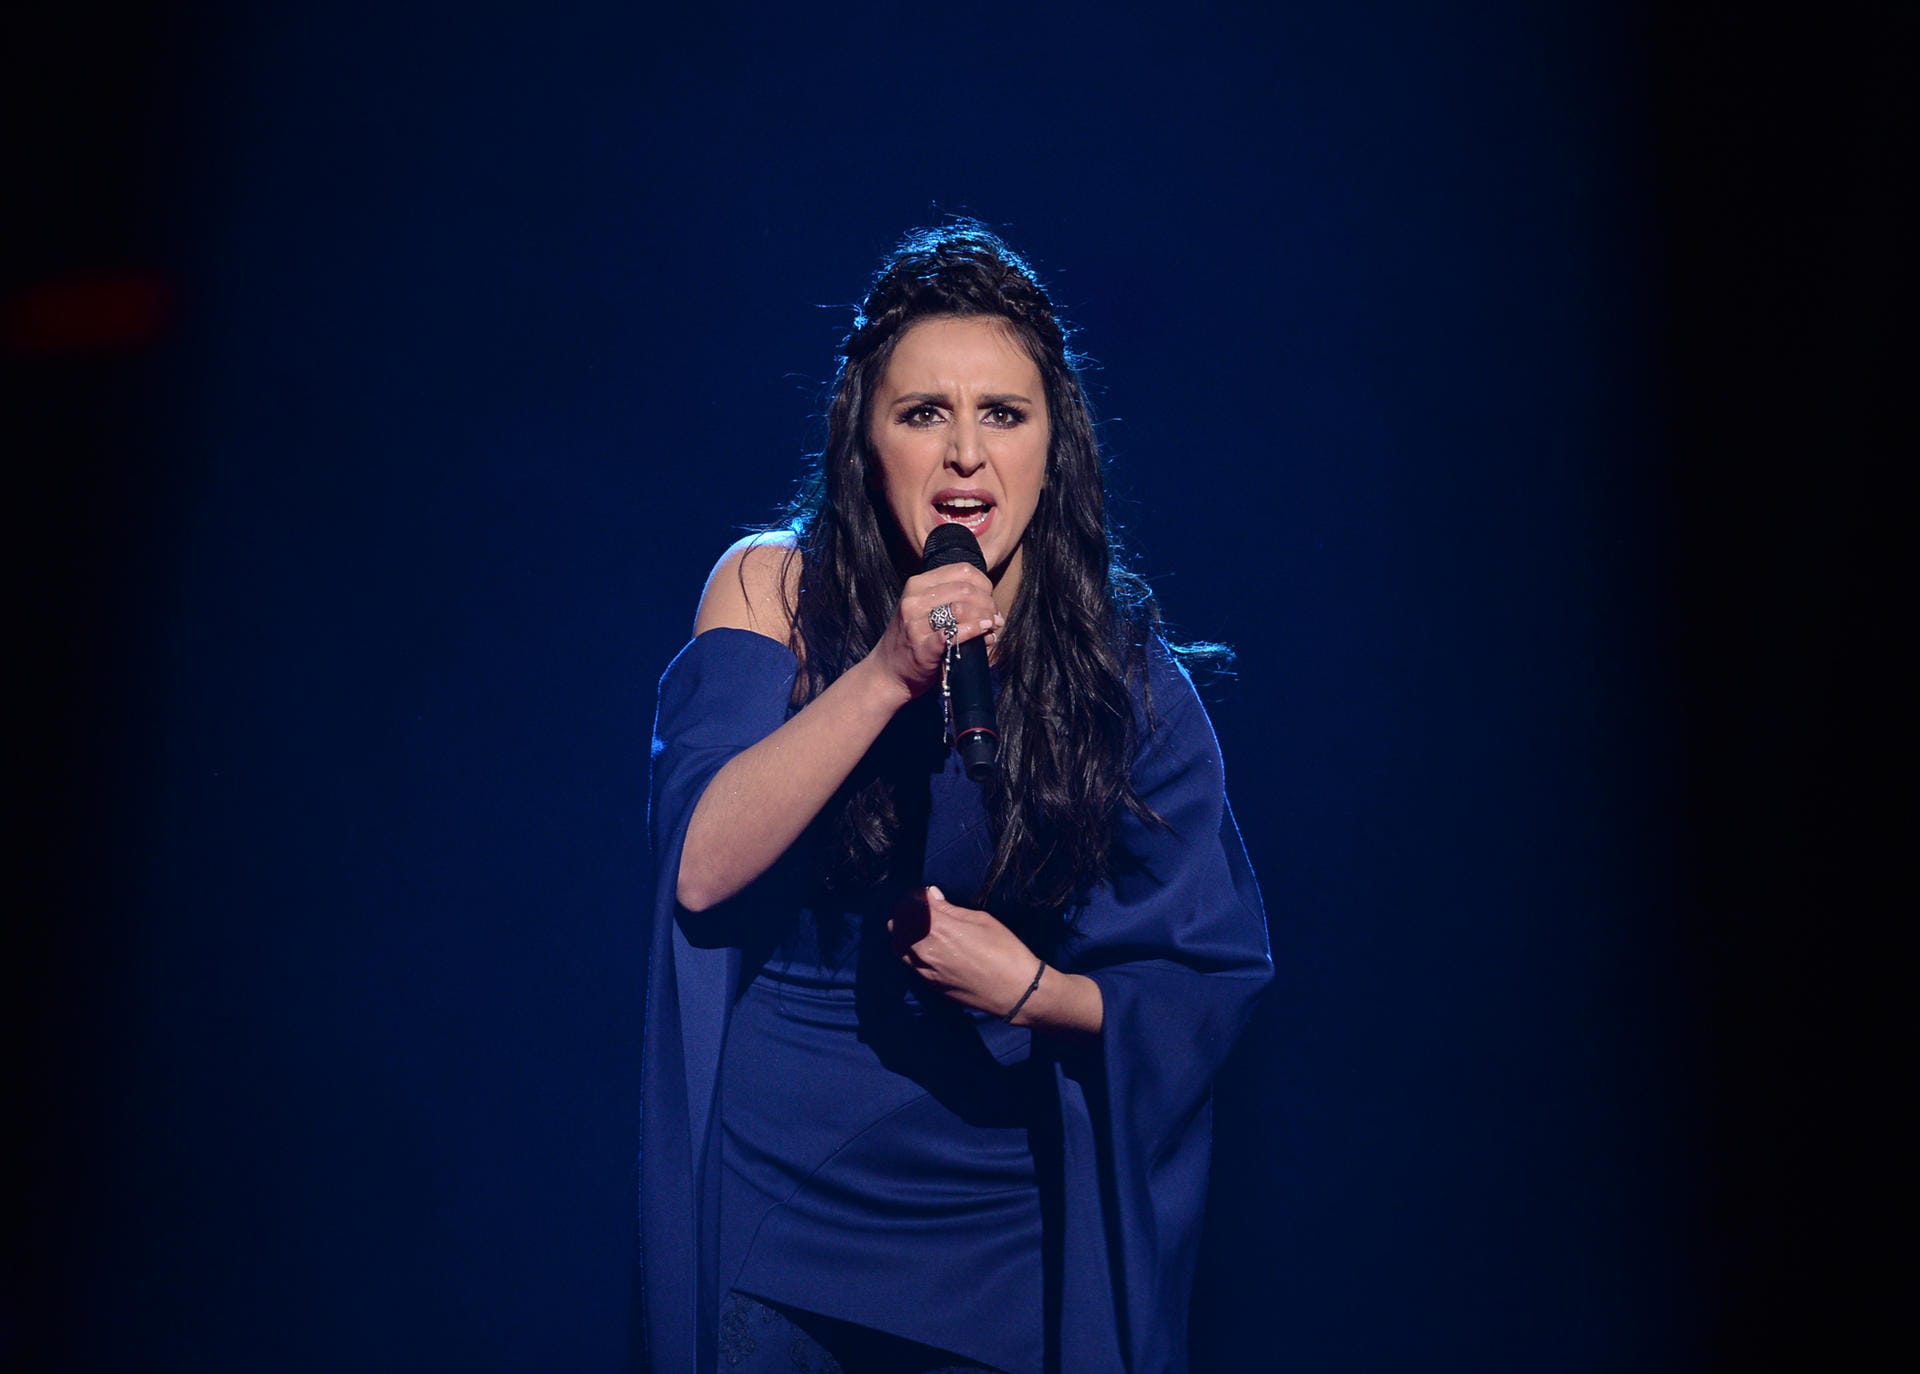 Platz eins für die ukrainische Sängerin Jamala mit dem Lied "1944" (534 Punkte).